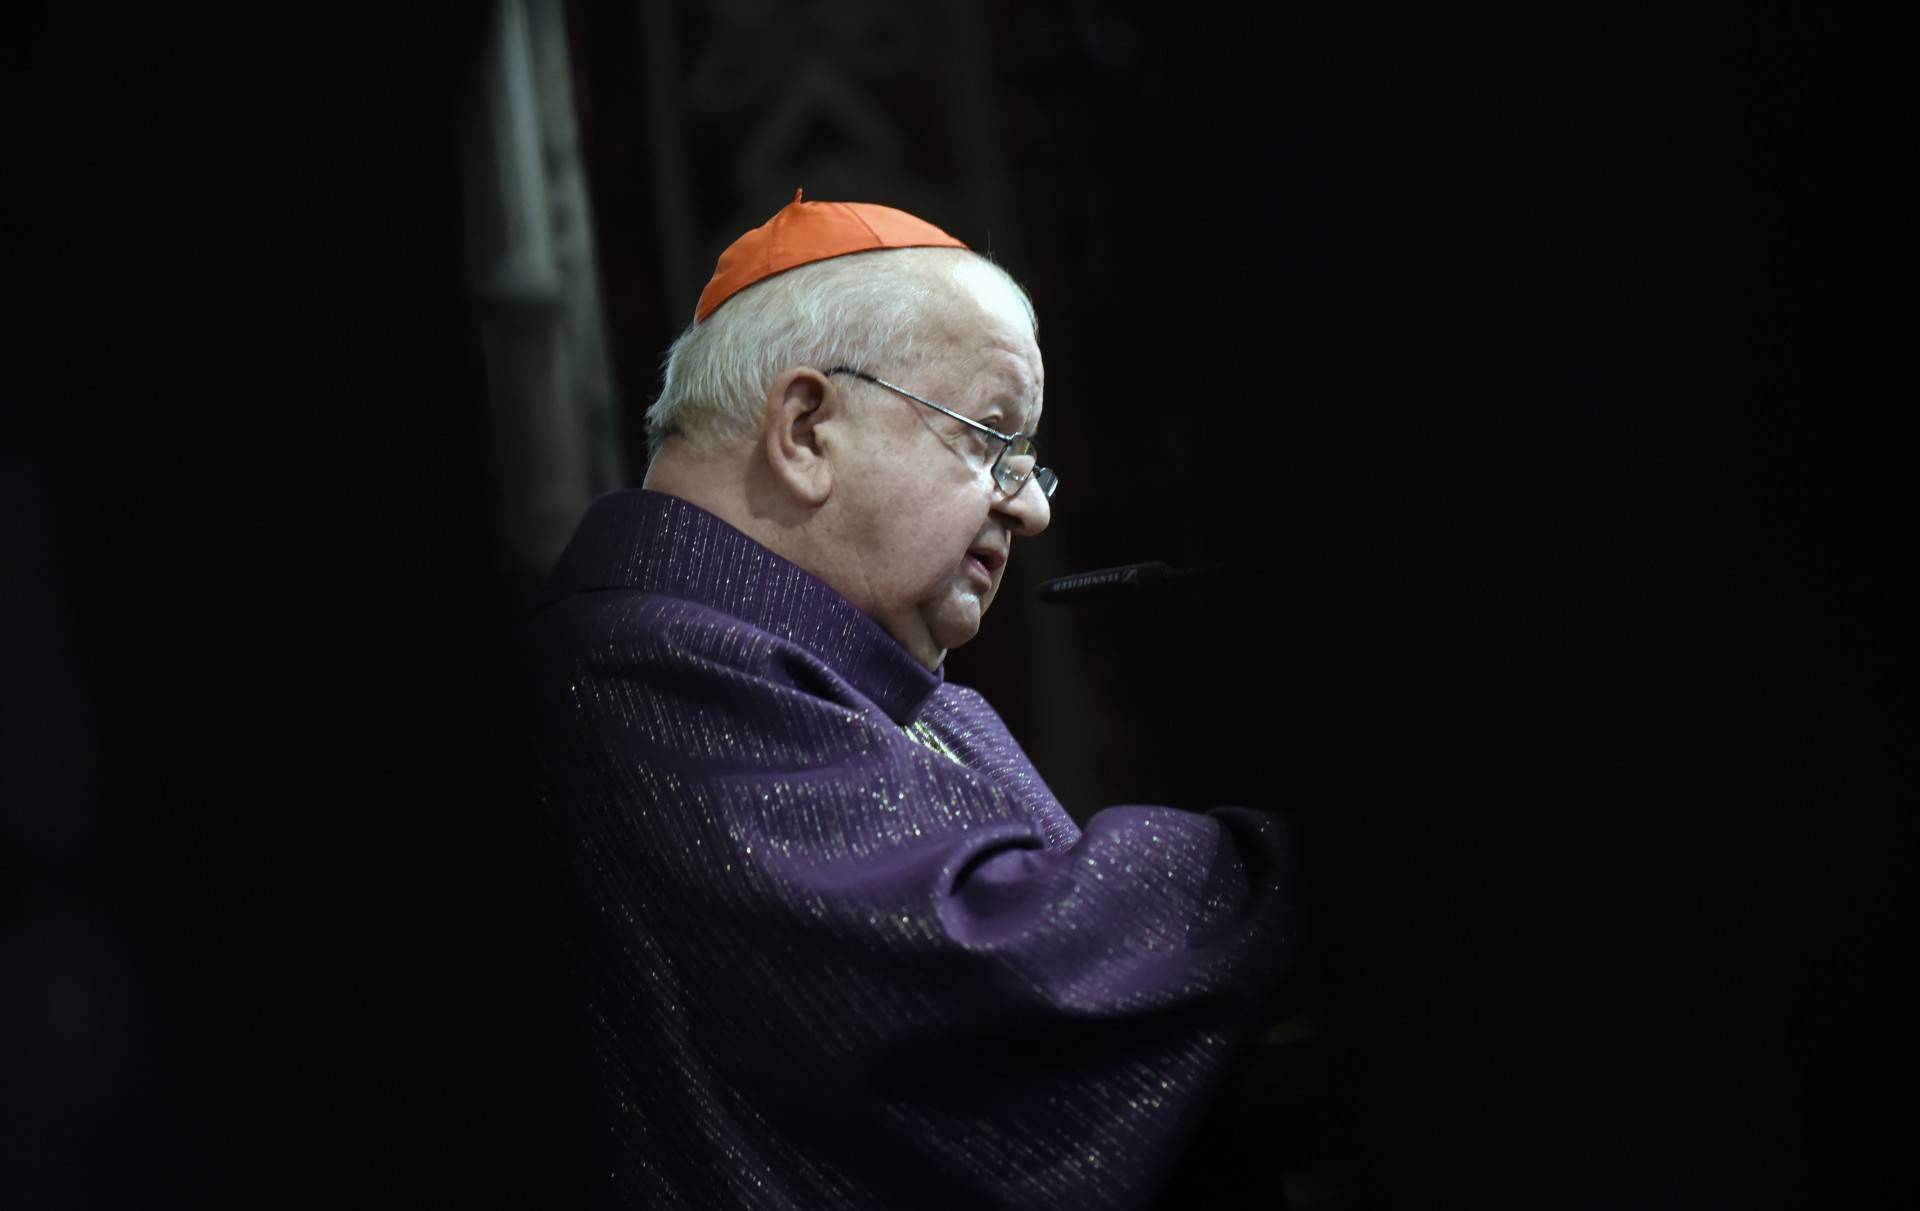 Kardynał Dziwisz odpowiada na zarzuty: "bezpodstawne i skandaliczne"